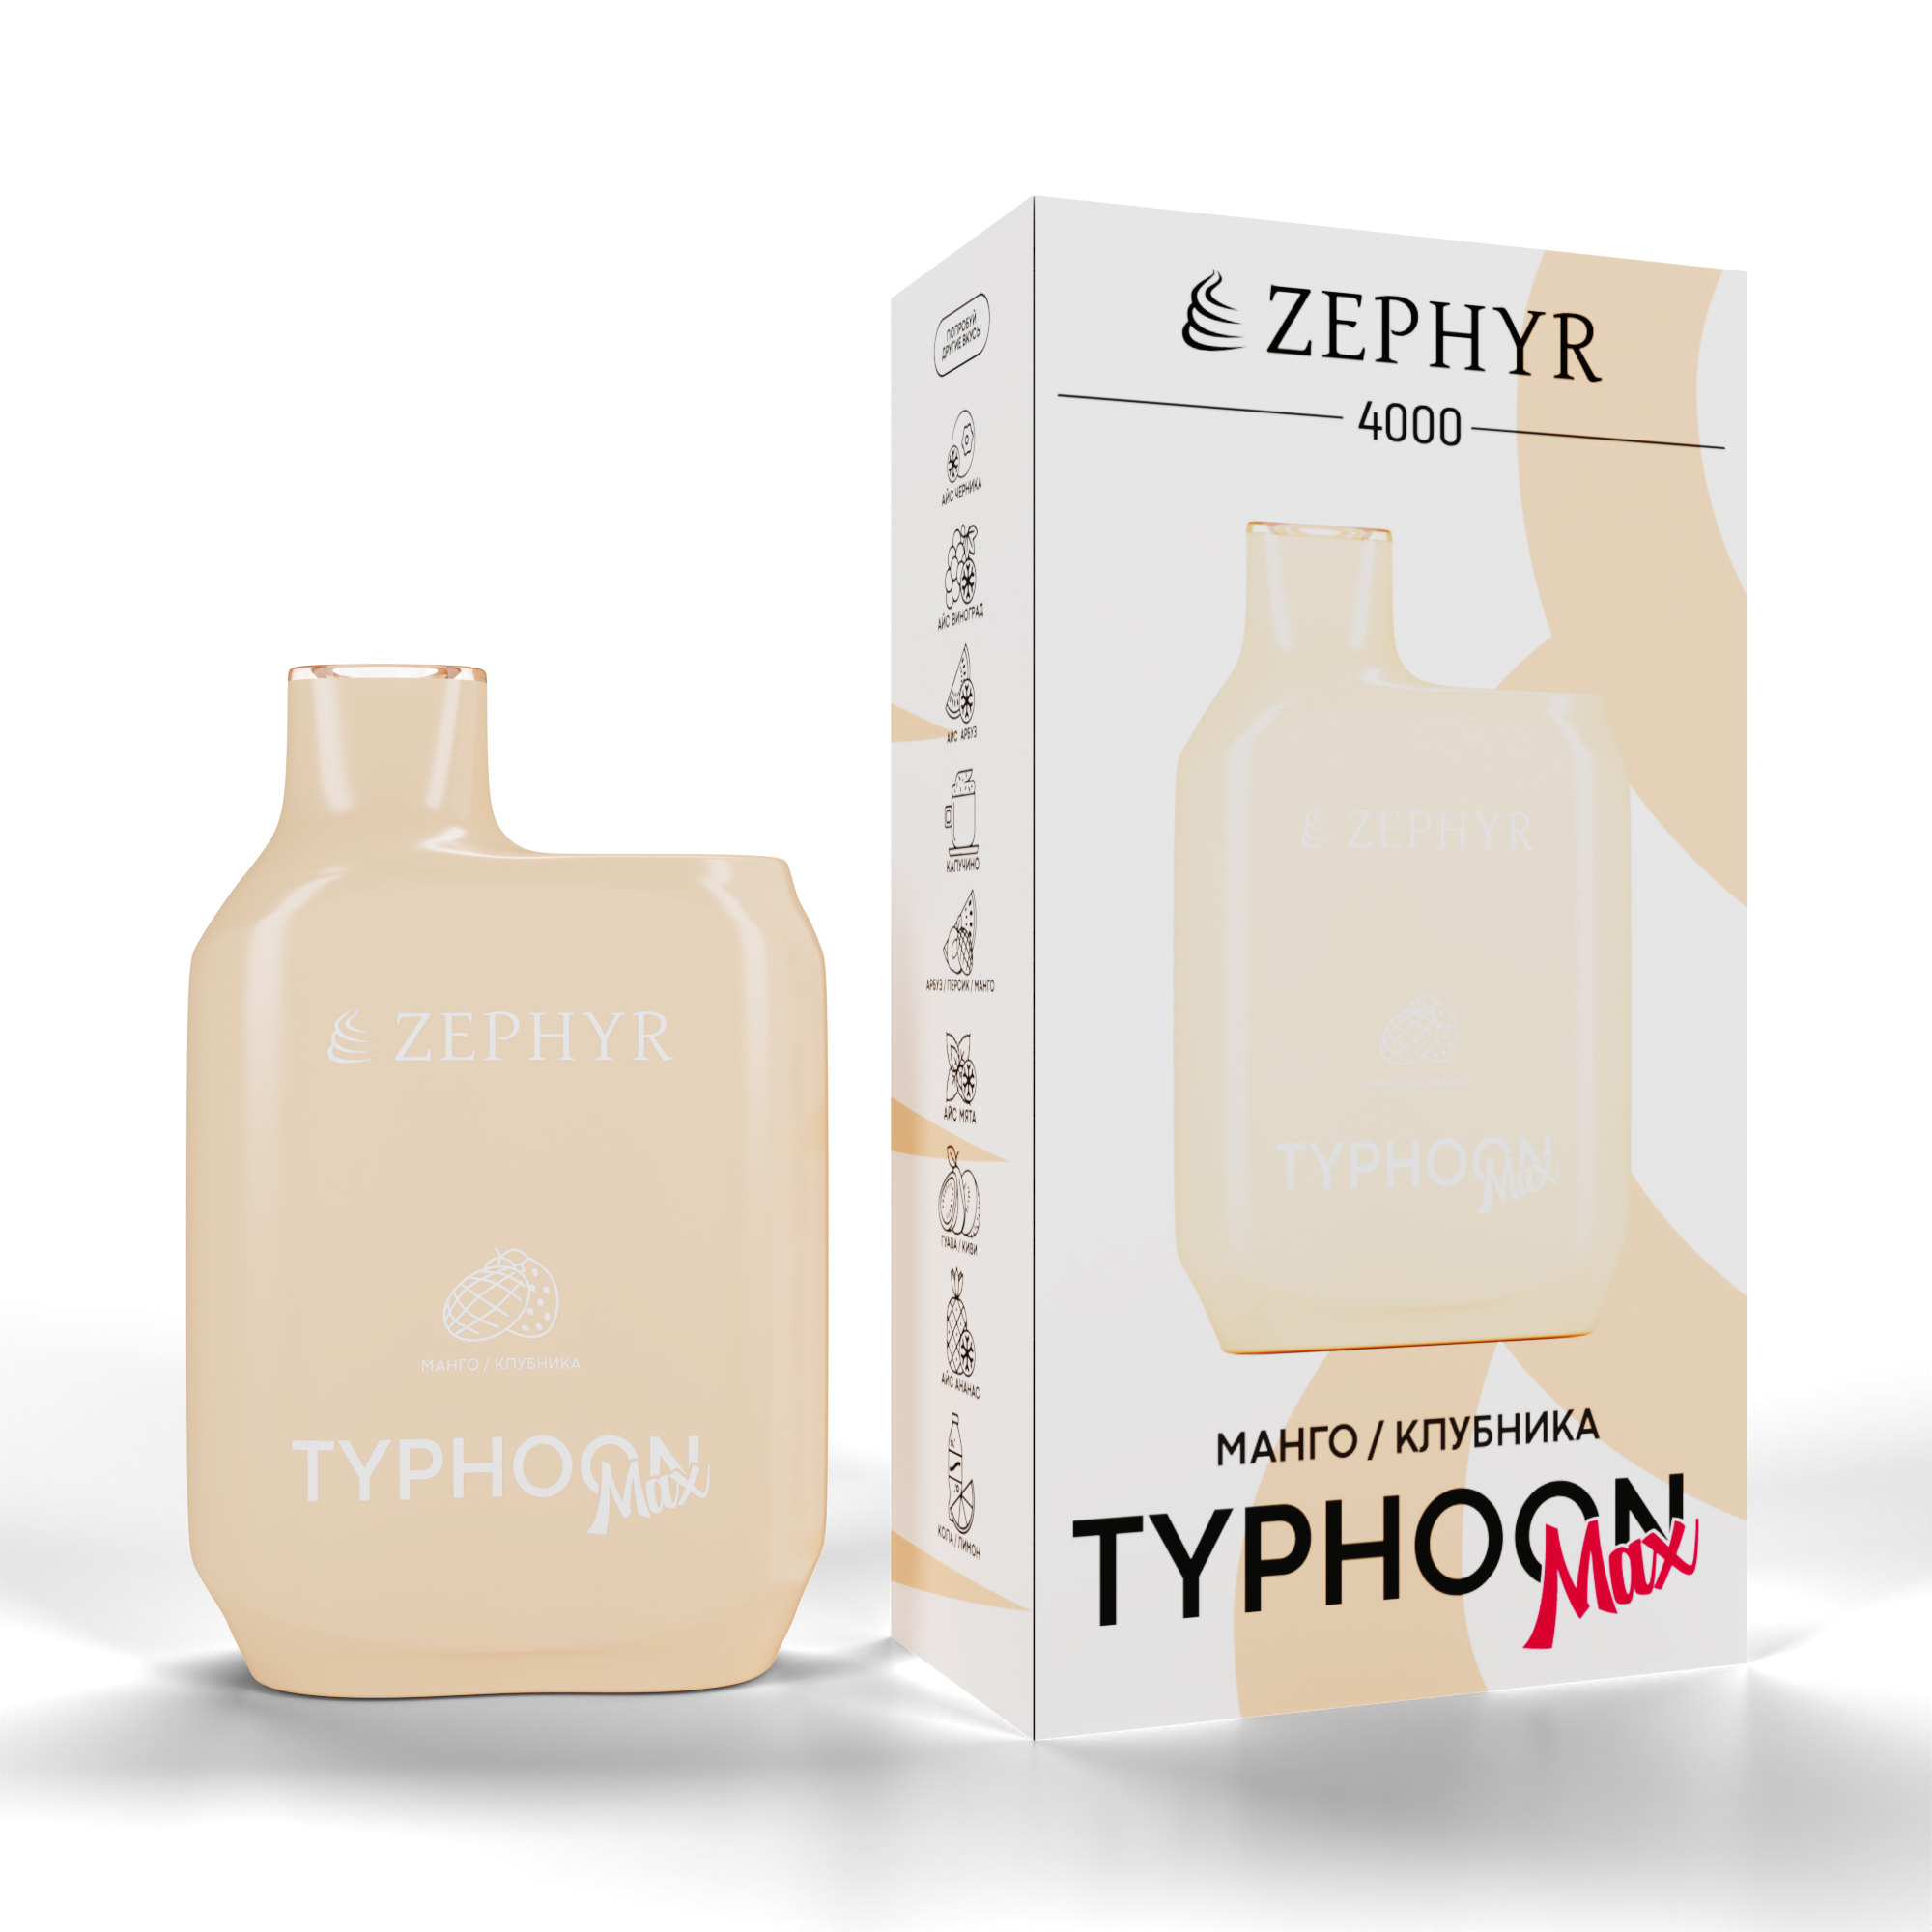 Одноразовая ЭС ZEPHYR Typhoon 4000, Strawberry Mango, 19 мг/см3, 12 мл (М)